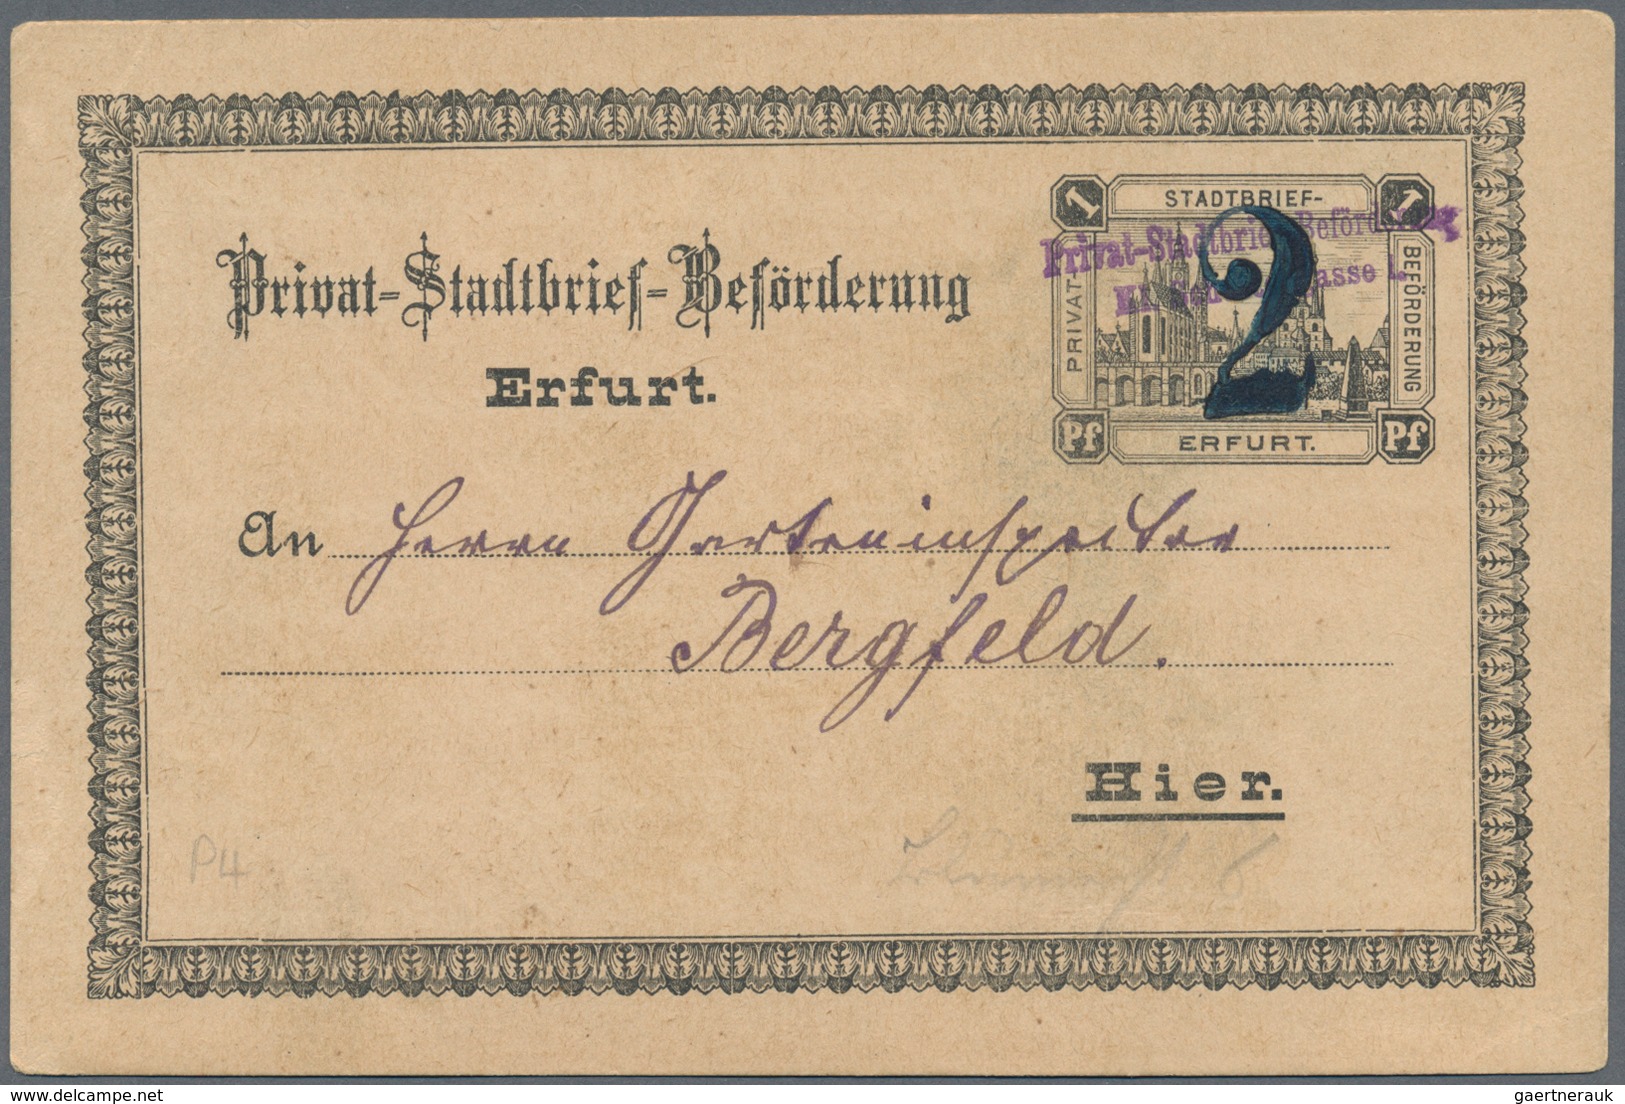 Deutsches Reich - Privatpost (Stadtpost): ERFURT: Privat-Stadtbrief-Beförderung, 2 Gebrauchte Ganzsa - Private & Lokale Post